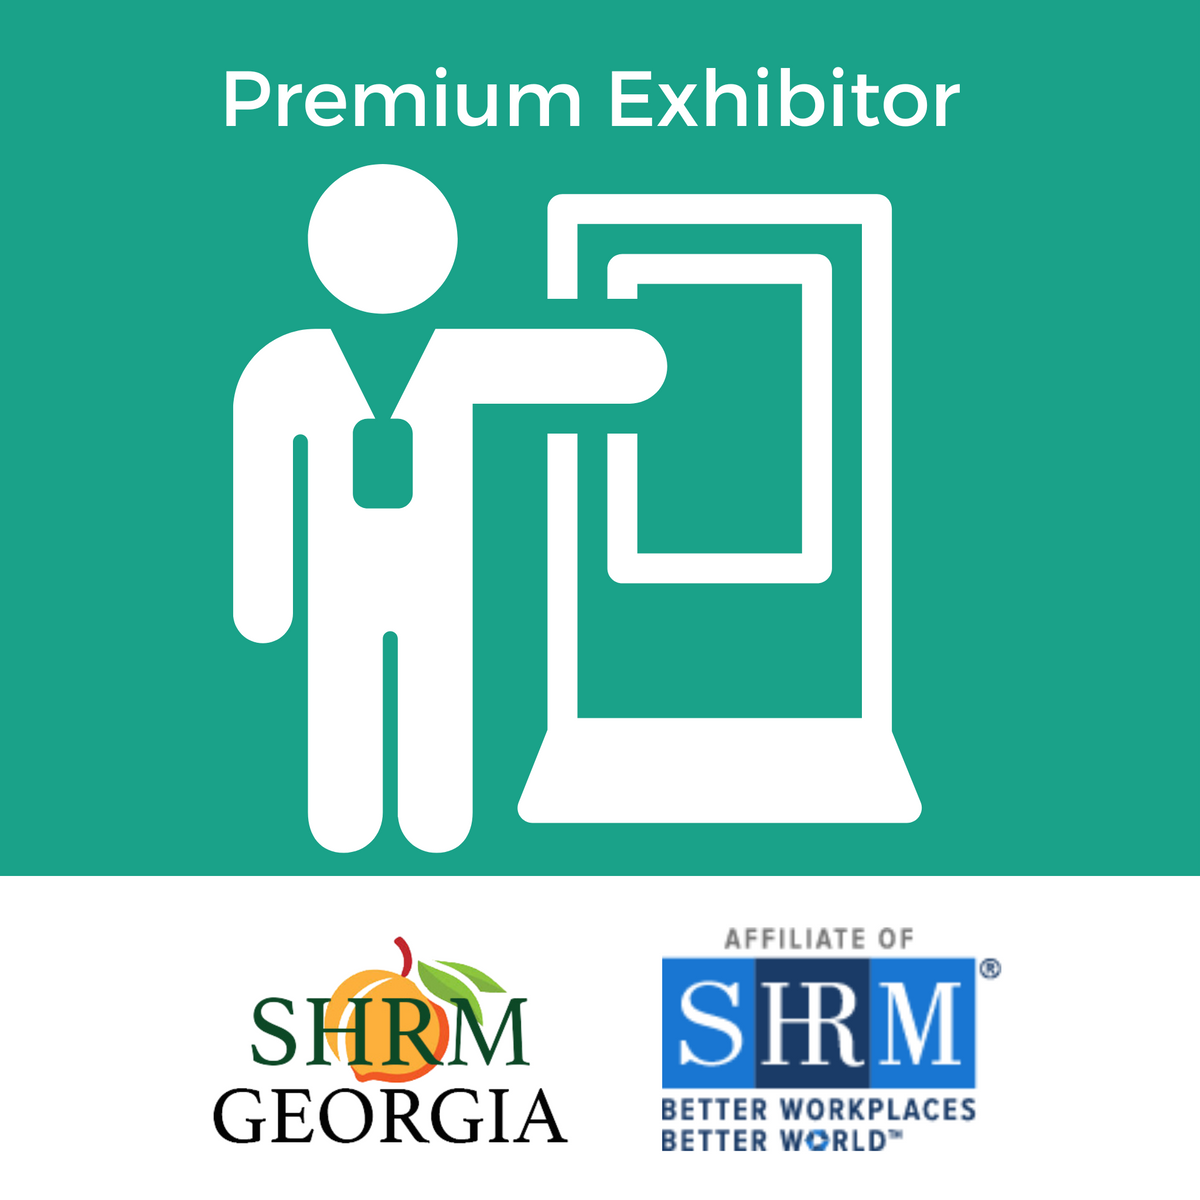 24 GA SHRM Annual - Premium Exhibitor